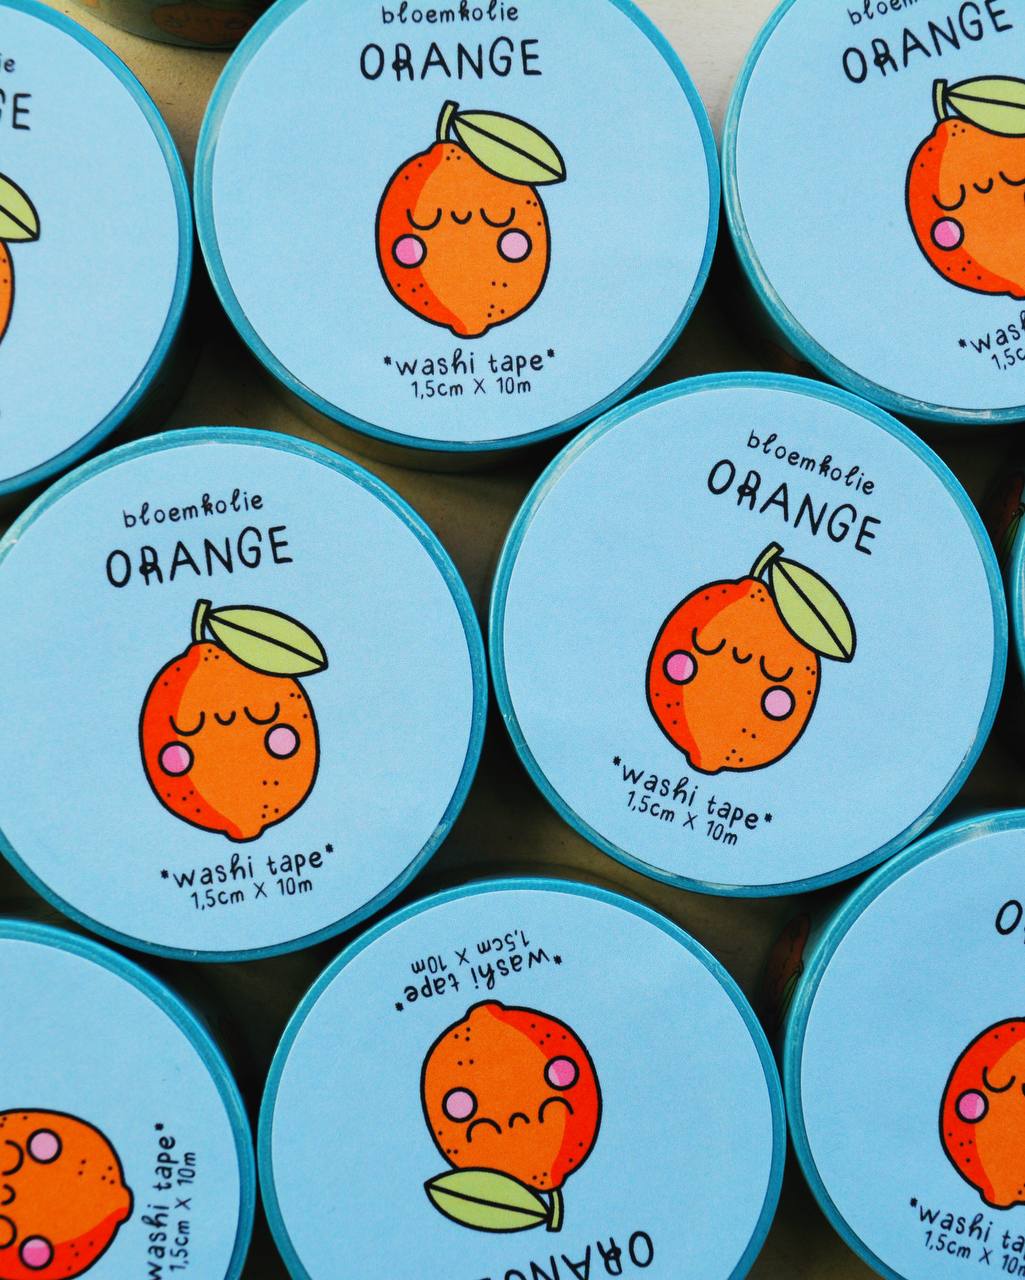 Orange - Washi tape